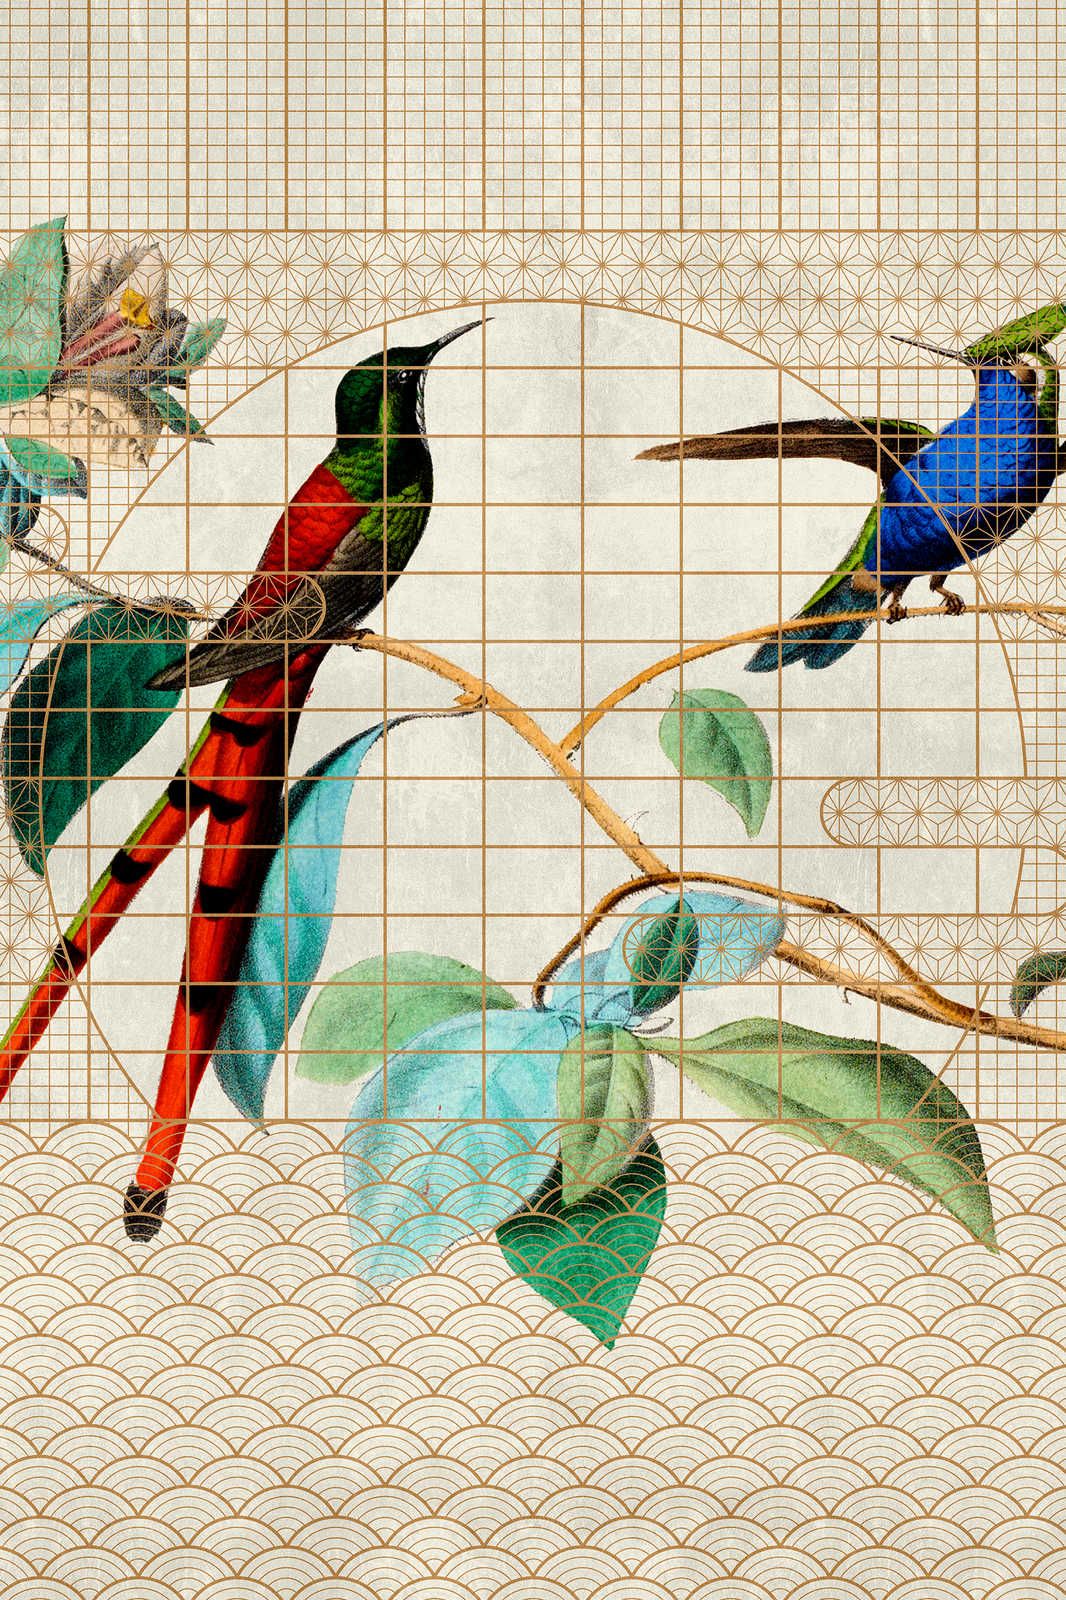             Pajarera 2 - Pájaros Cuadro en lienzo Pájaros cantores en una jaula dorada - 0,90 m x 0,60 m
        